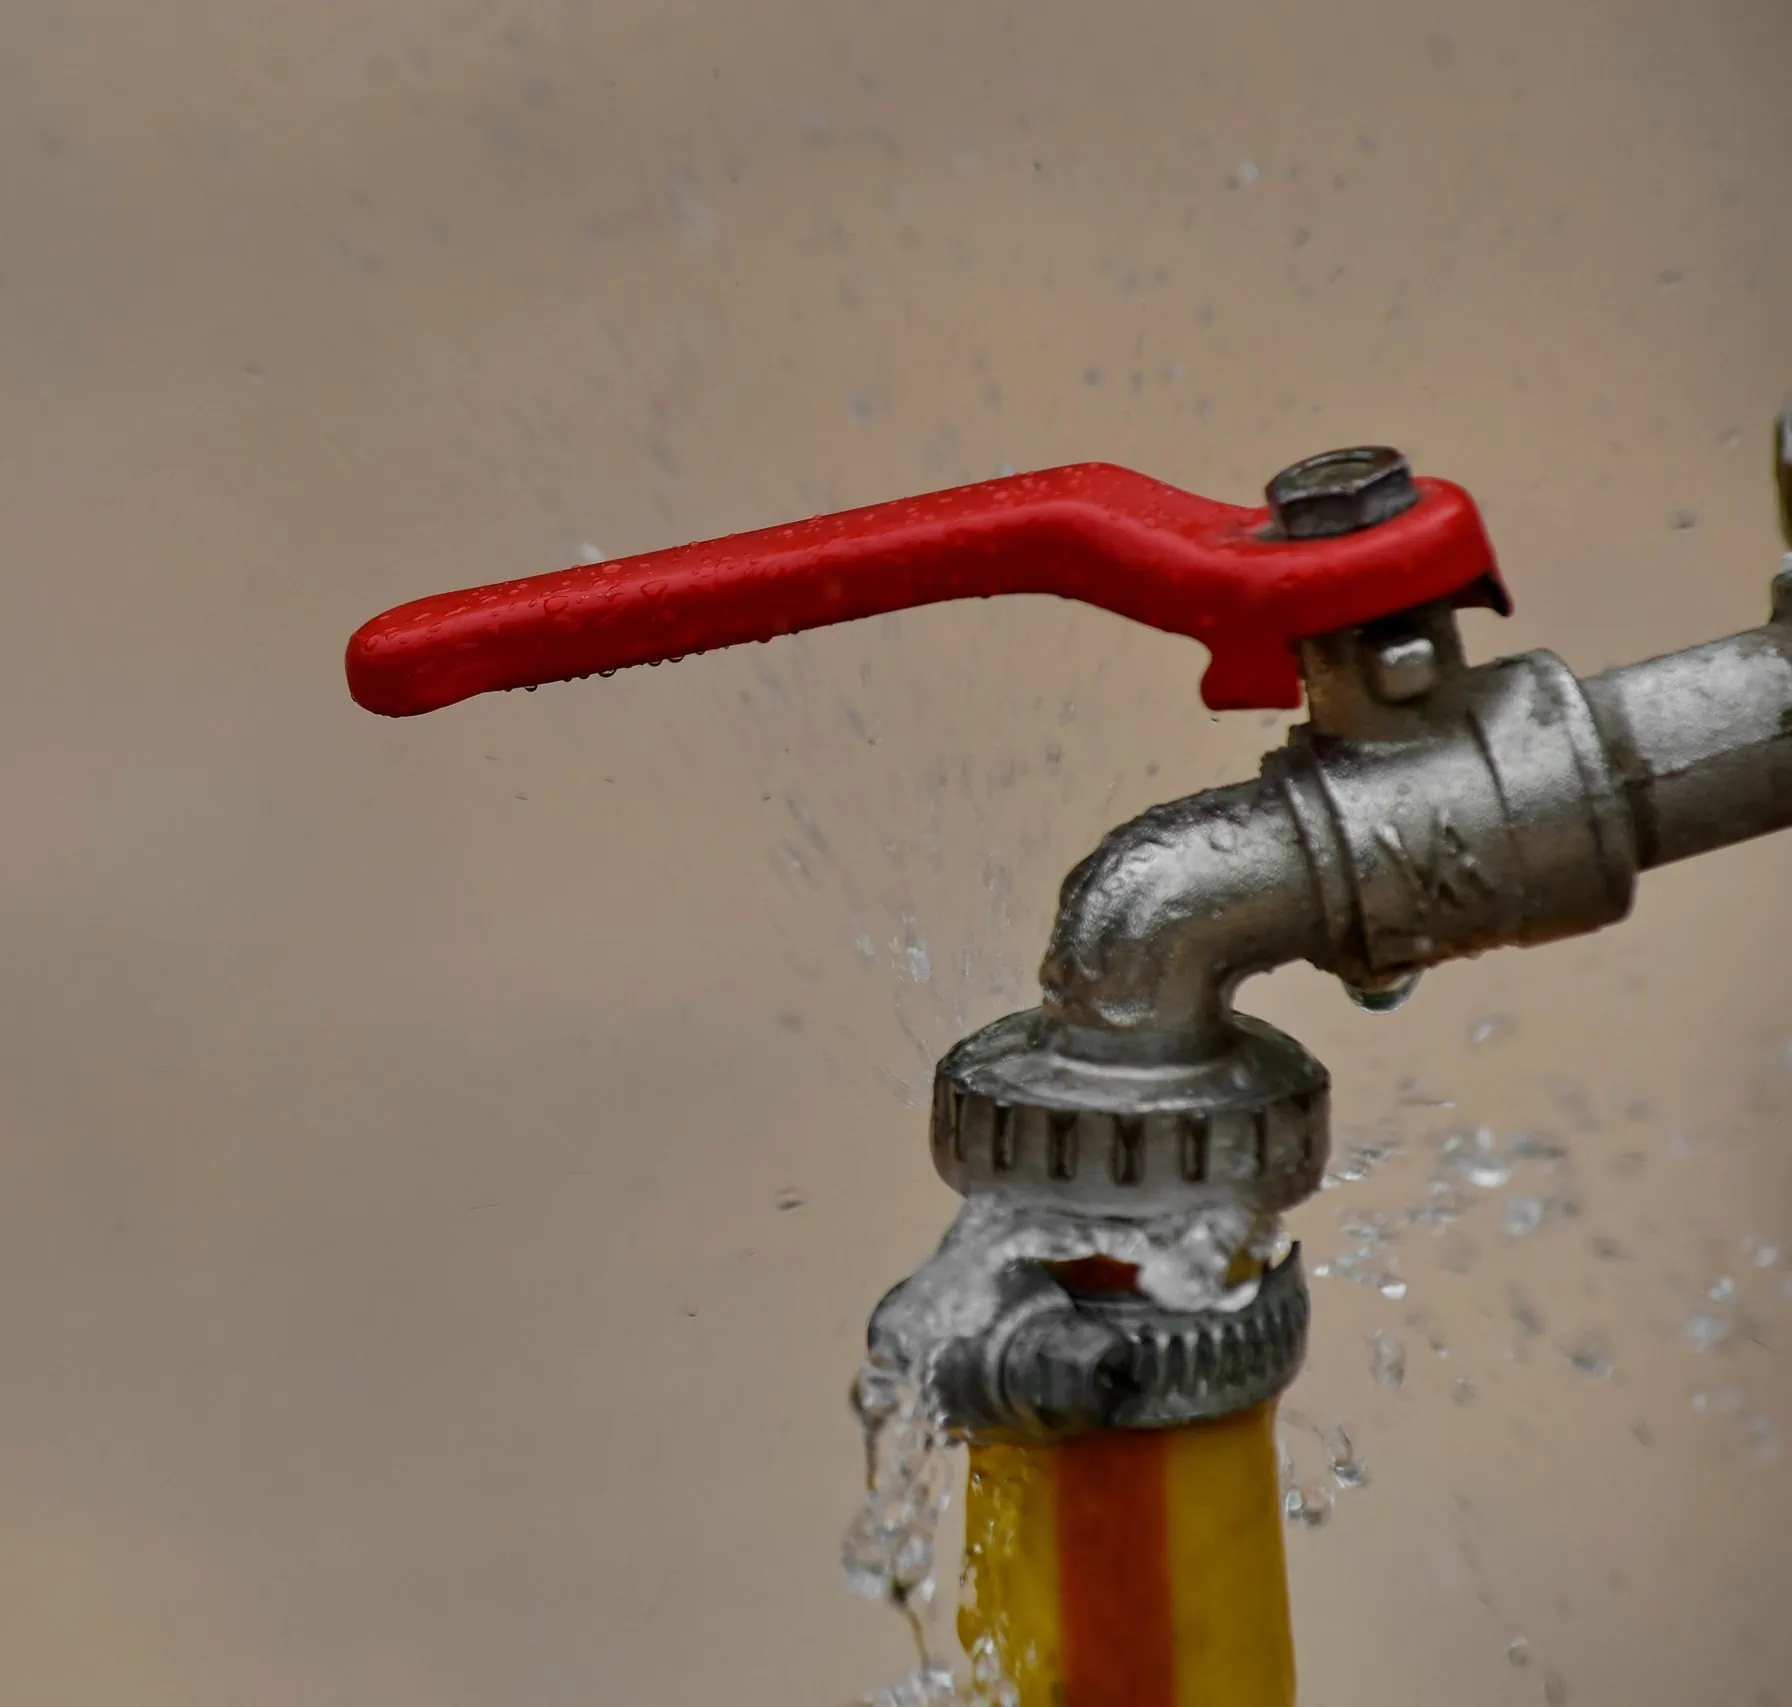 Runny faucet that leaks detected by Verkada sensors